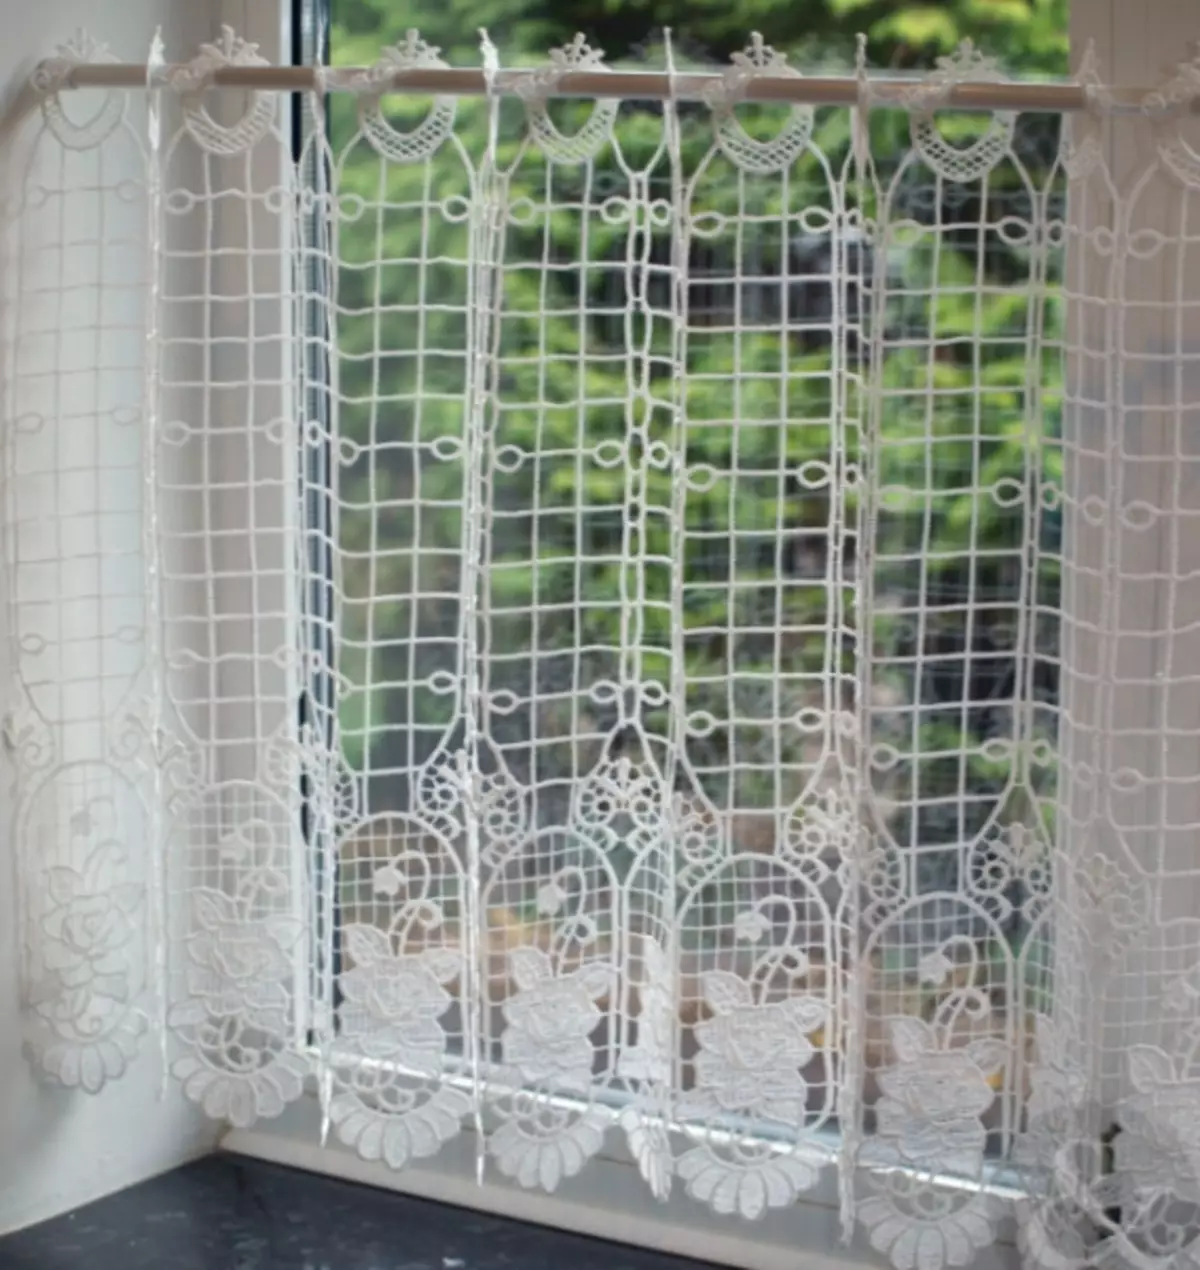 Korg gardin på dörren av silke tråd - det är väldigt vackert och ovanligt